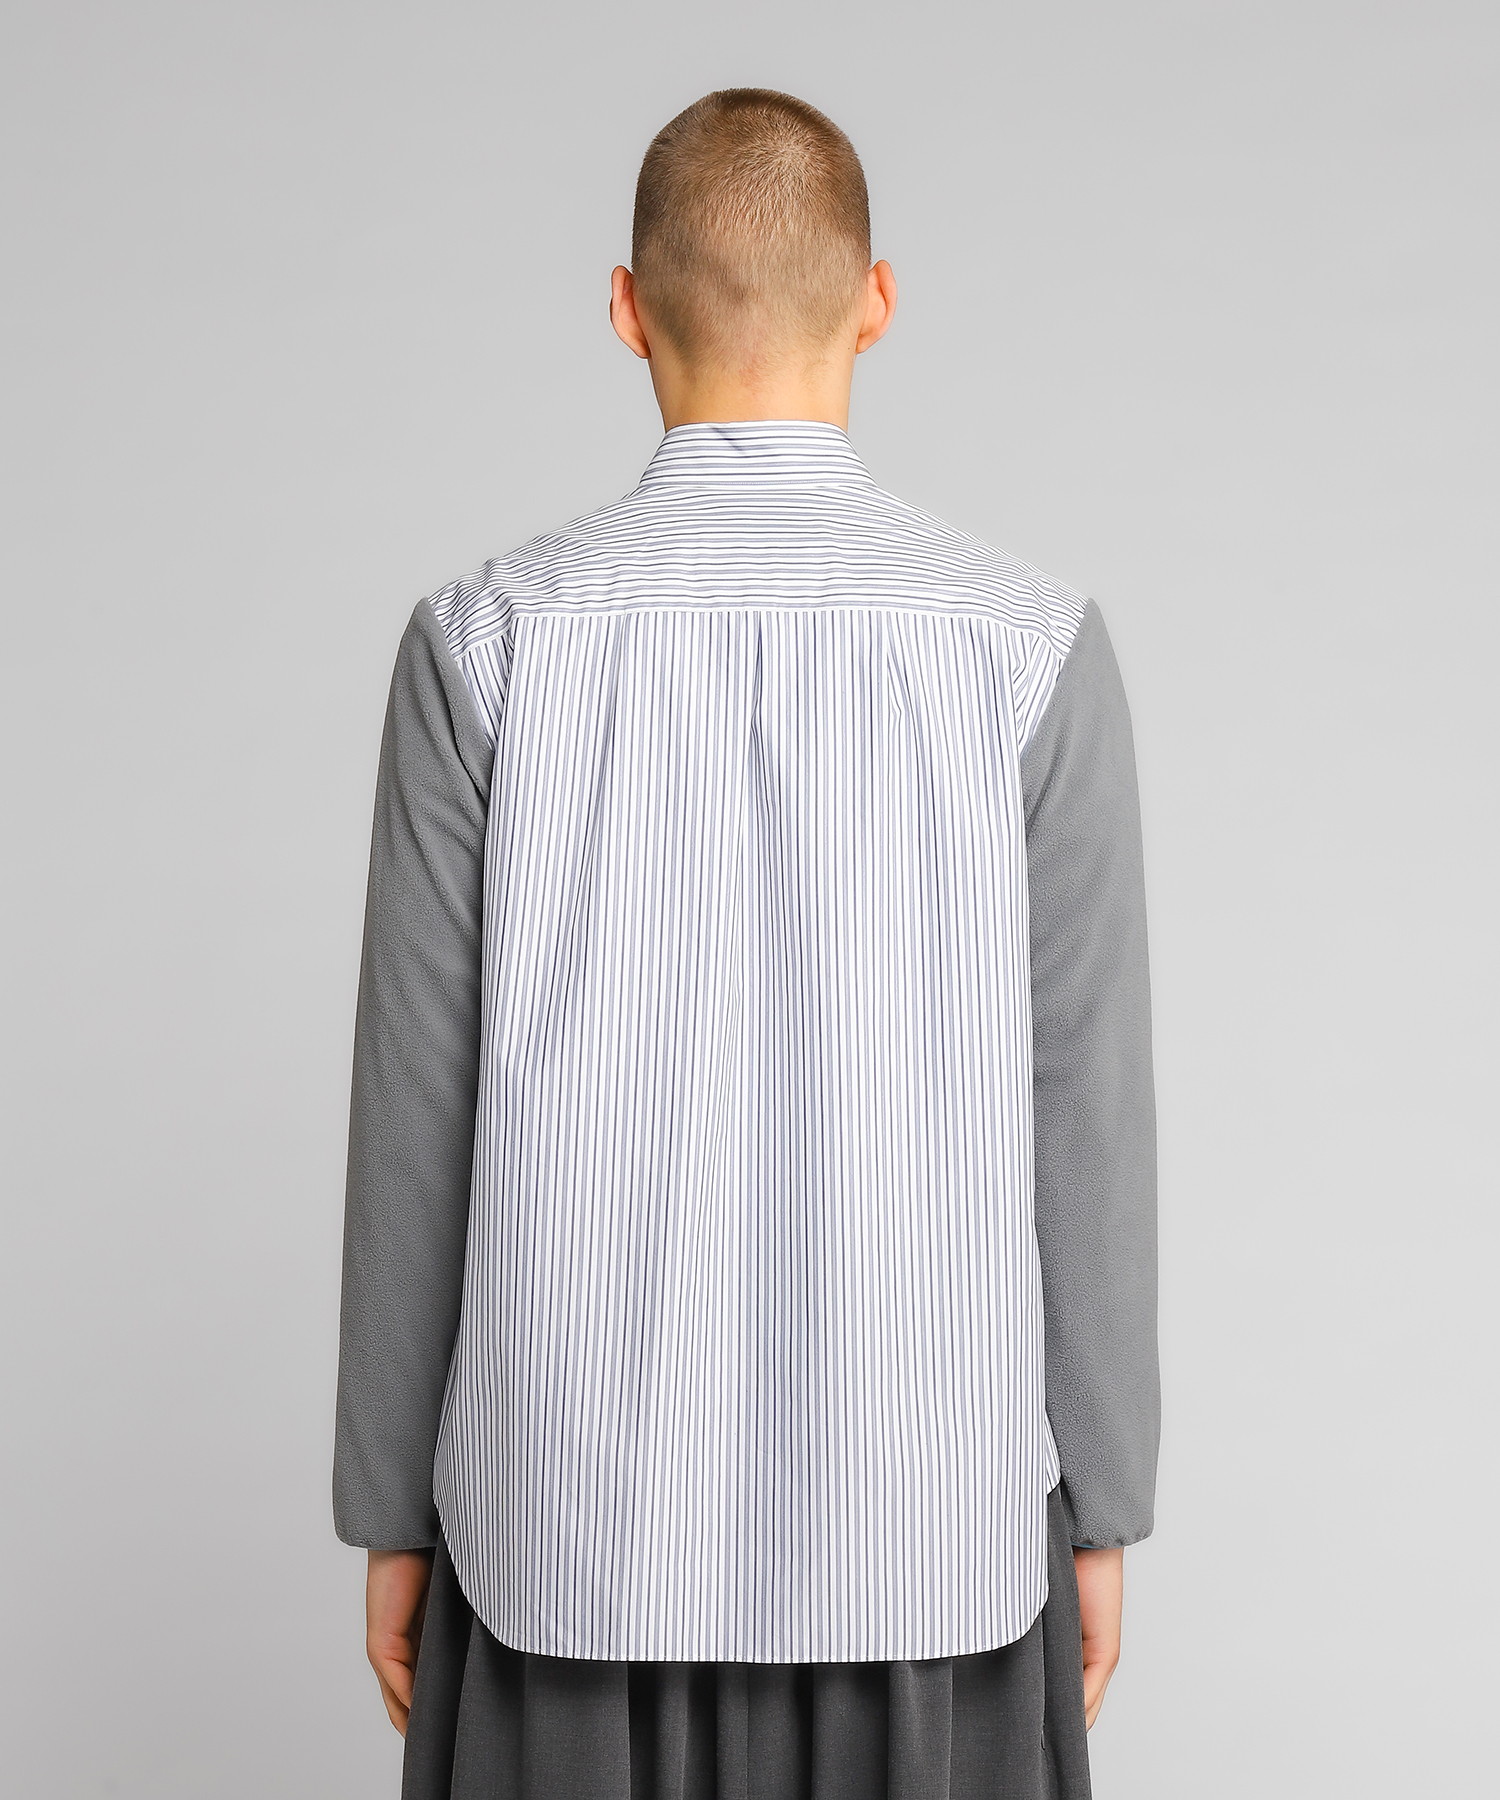 Fleece sleeve shirt（FUMITO GANRYU）｜TATRAS CONCEPT STORE 